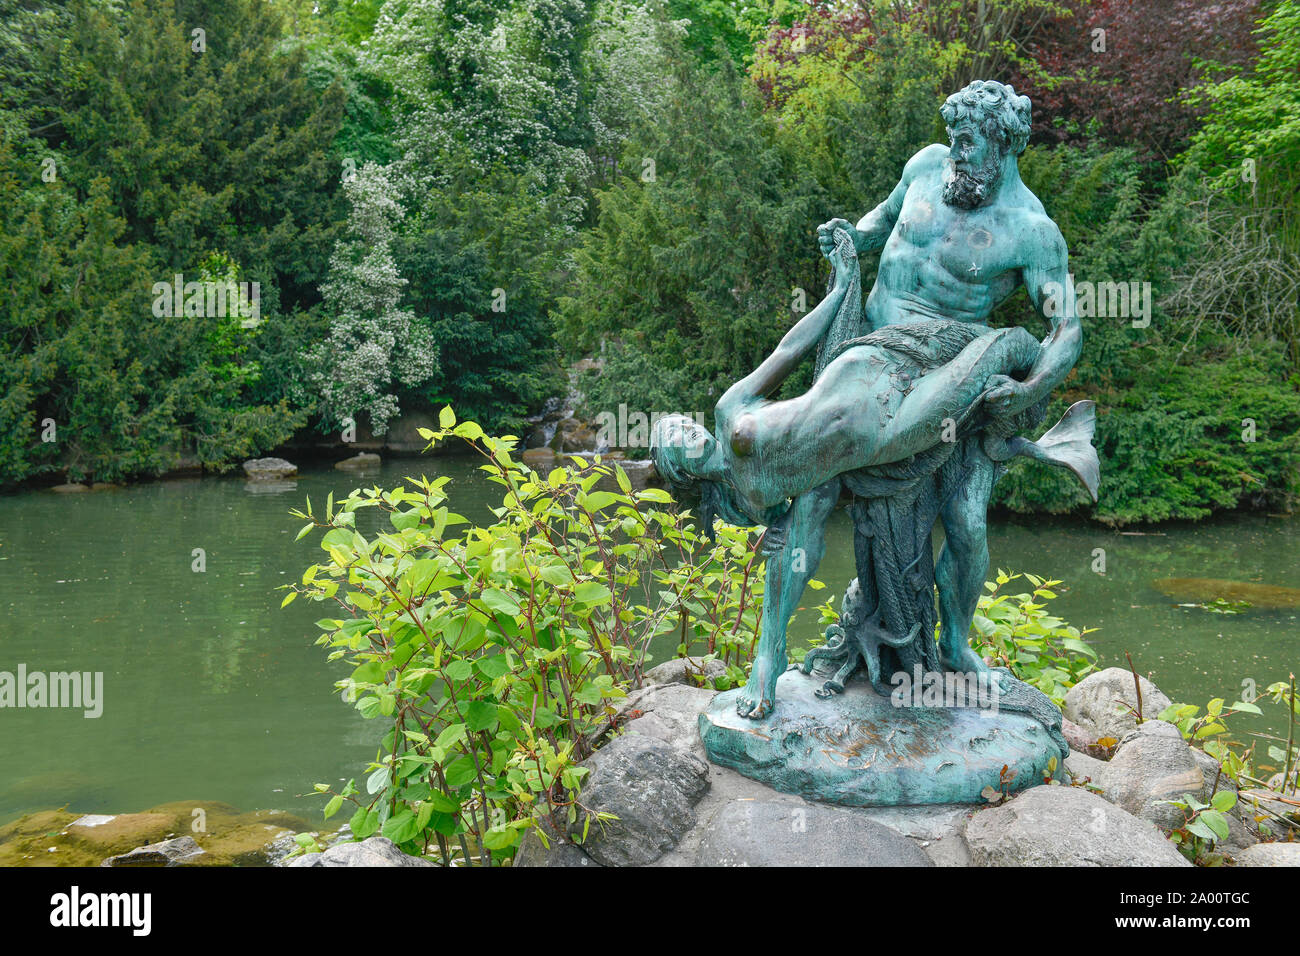 Der seltene Fang, Bronzeskulptur von Ernst Herter, See am Wasserfall, Viktoriapark, Kreuzberg, Berlin, Deutschland Stock Photo